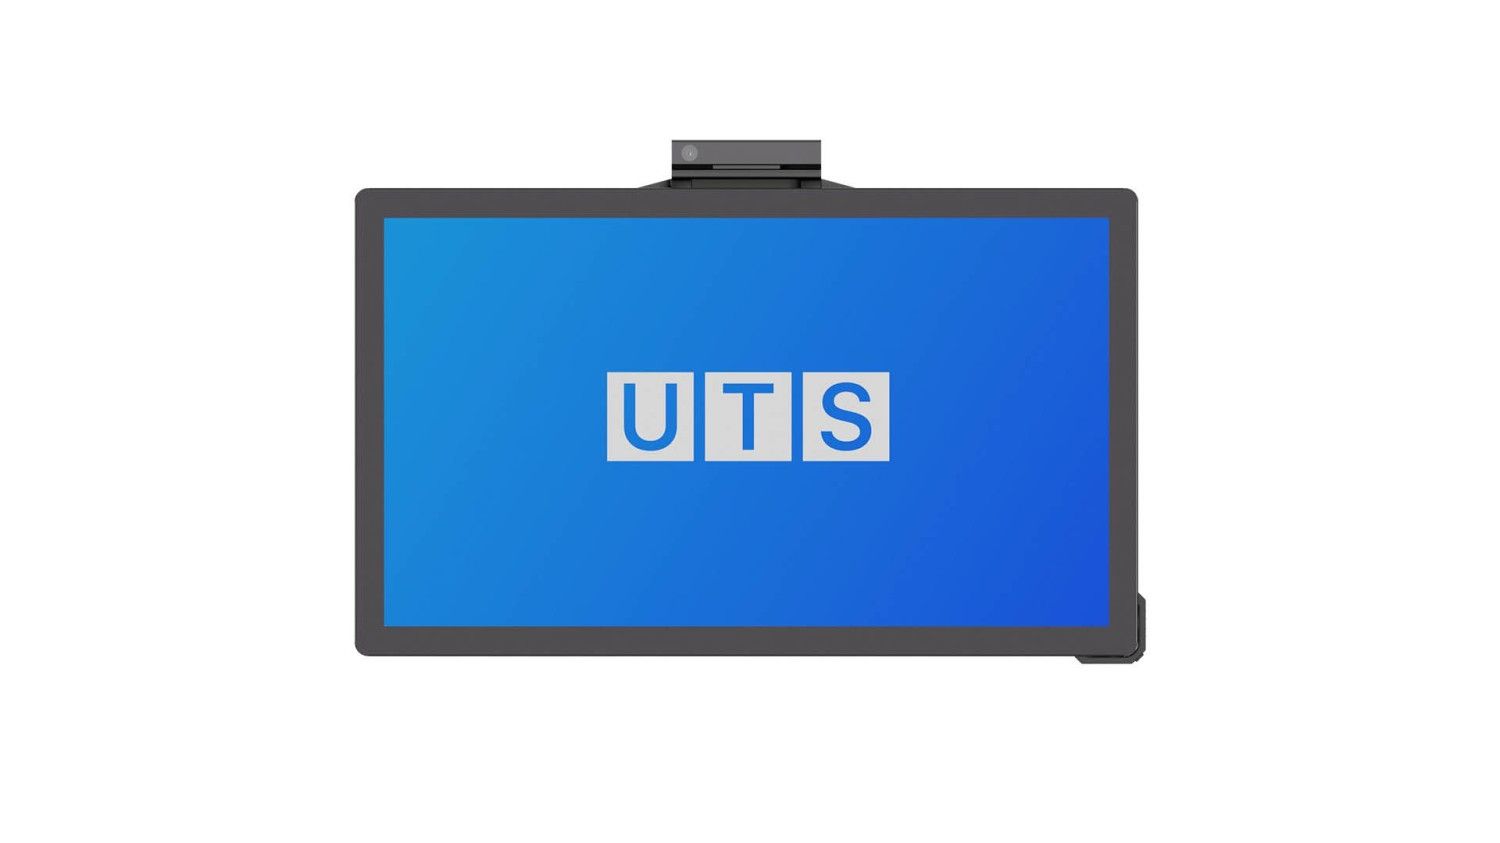 Интерактивная панель UTS FLY PRO W 75